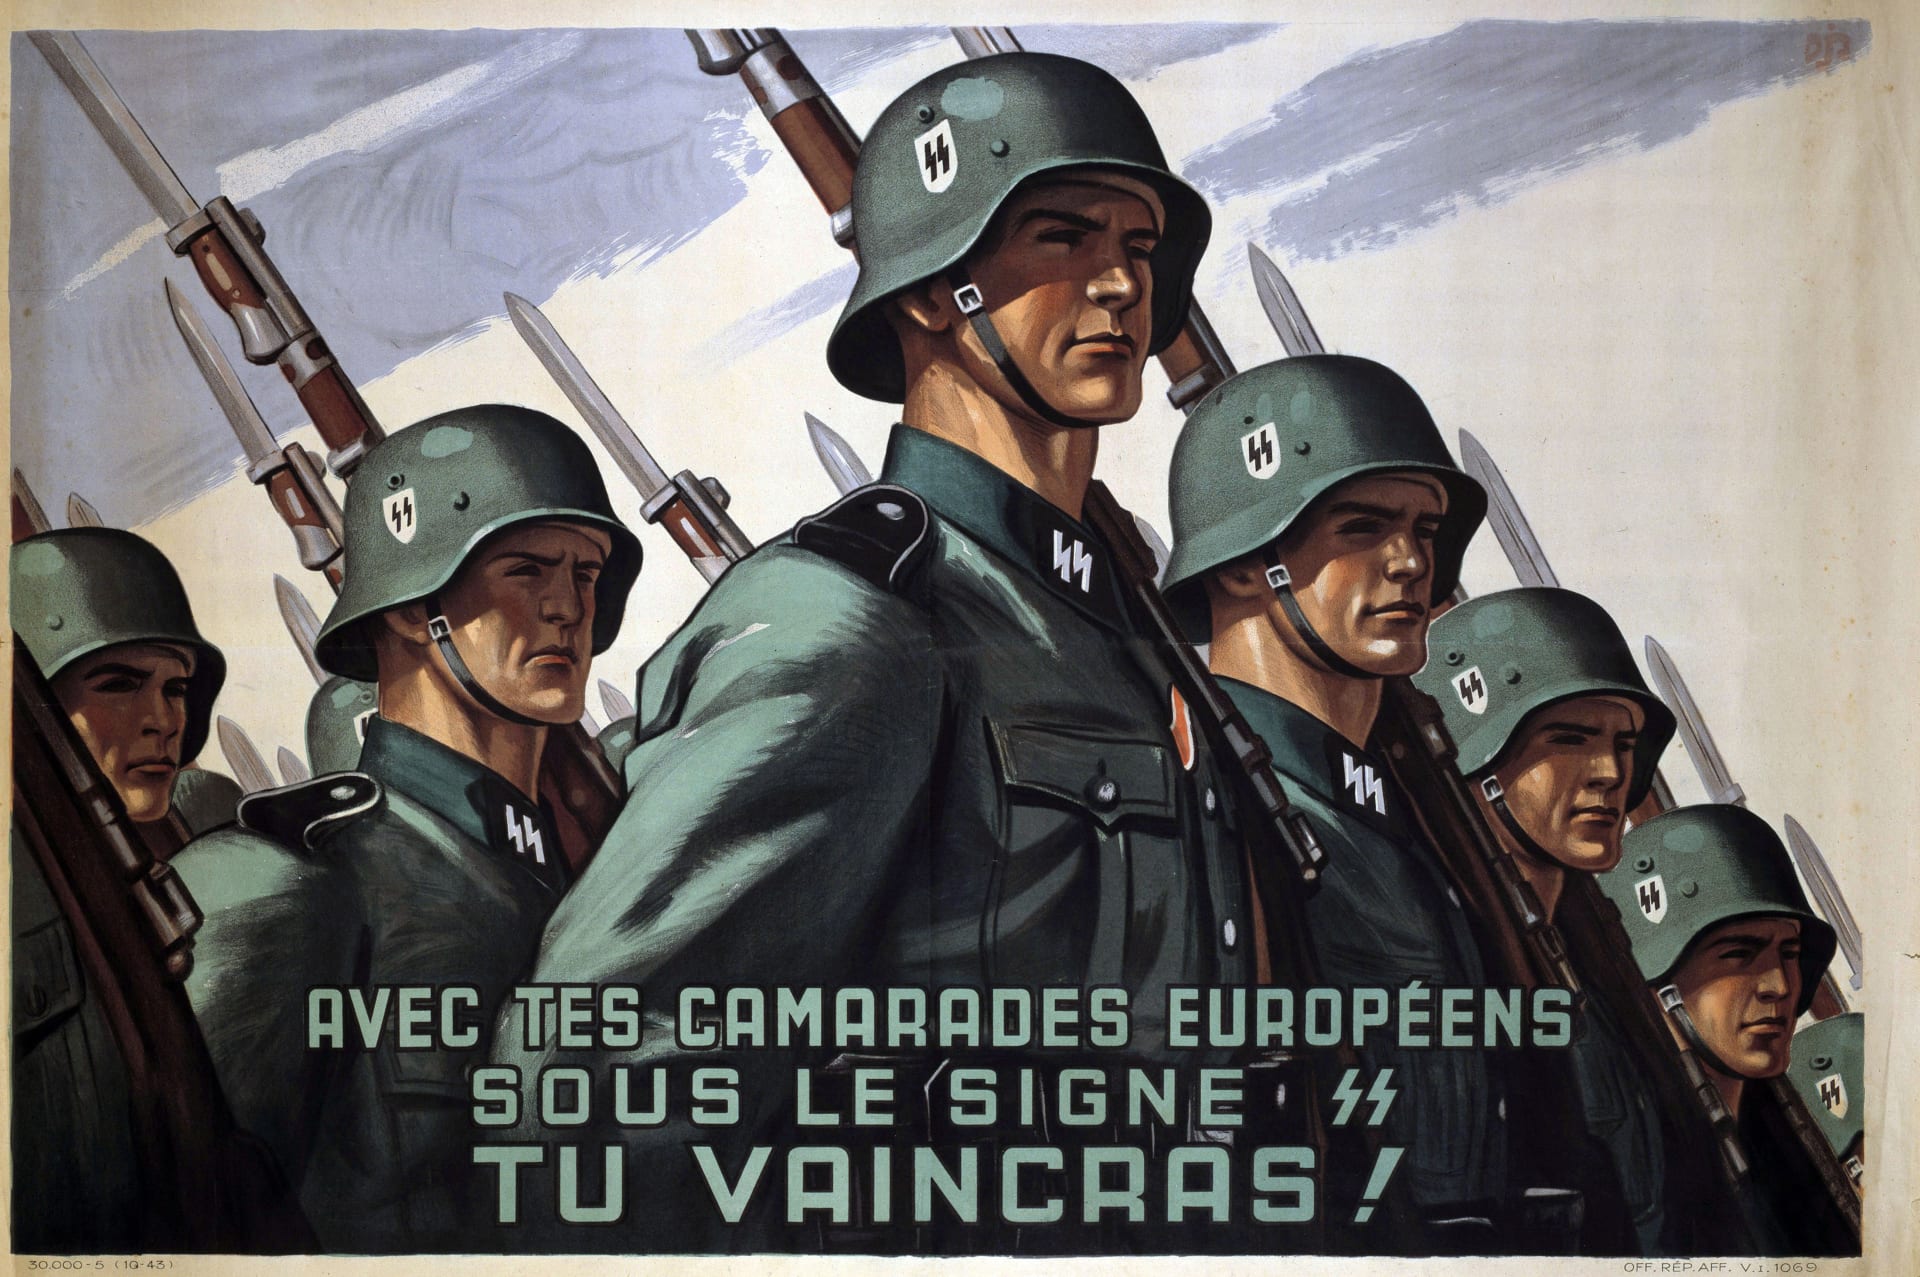 Němci se snažili Francouze získat na svou stranu. Na plakátu je vyzývají, aby se přidali k jednotkám SS.